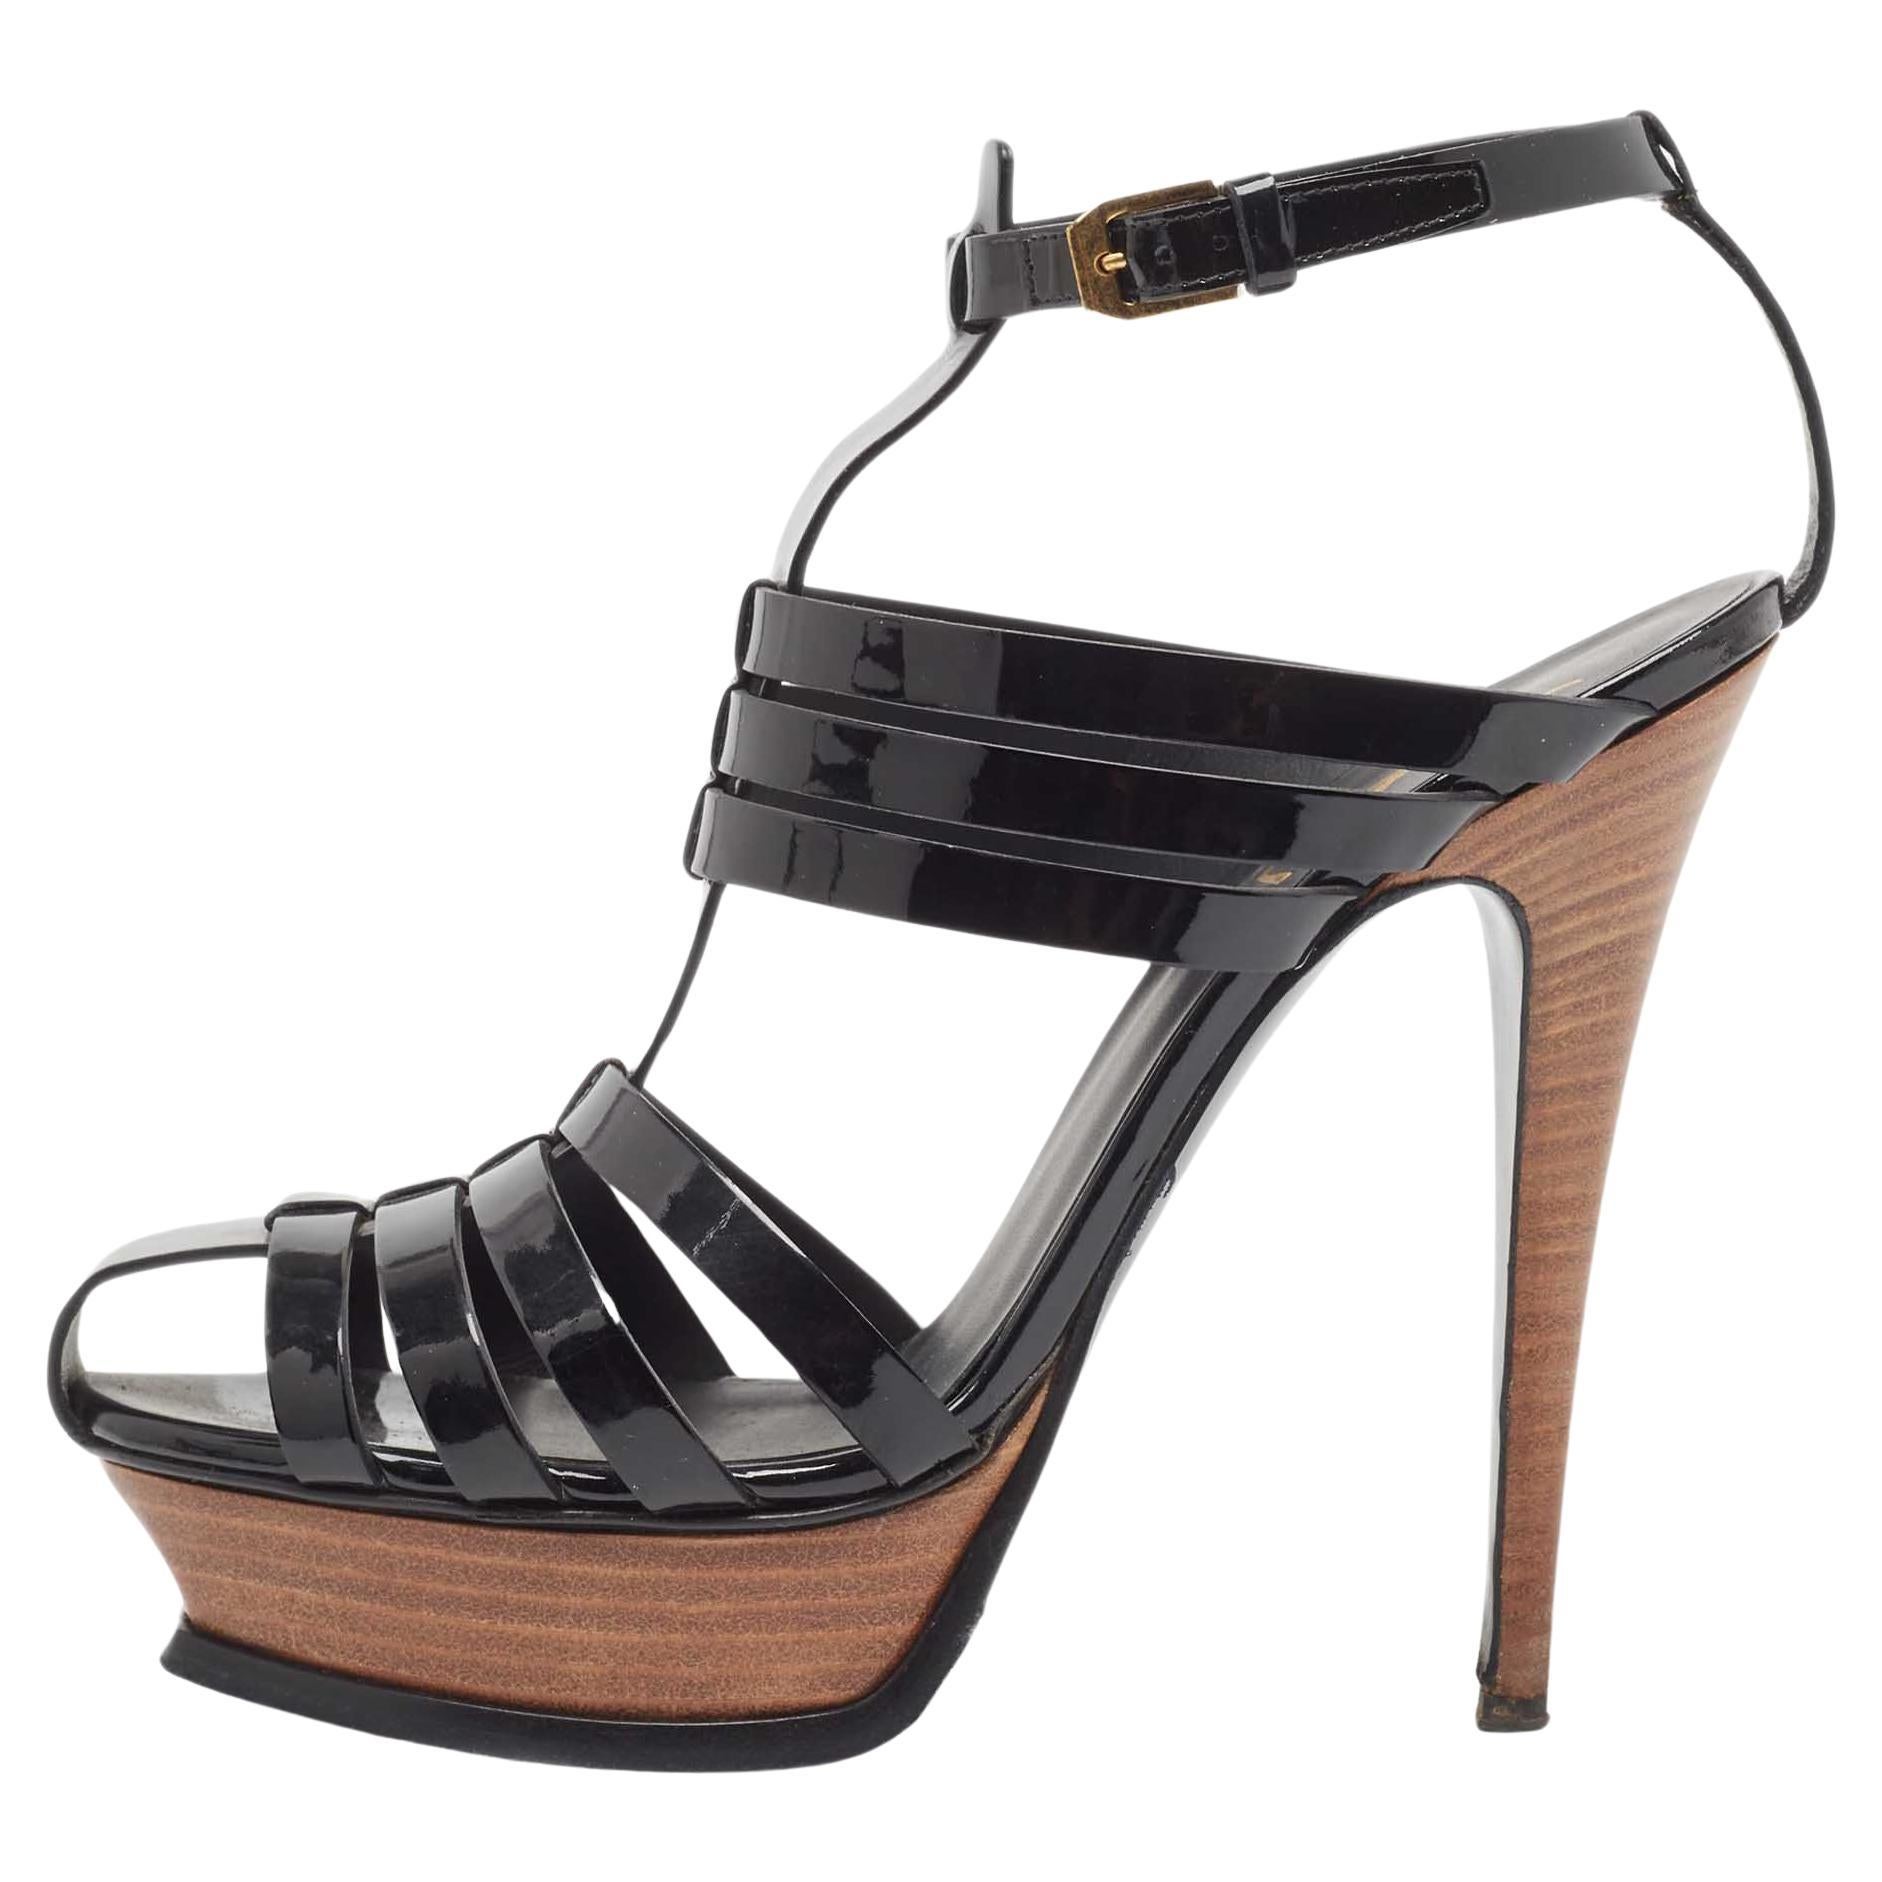 Yves Saint Laurent Black Patent Tribute Ankle Strap Sandals Size 39